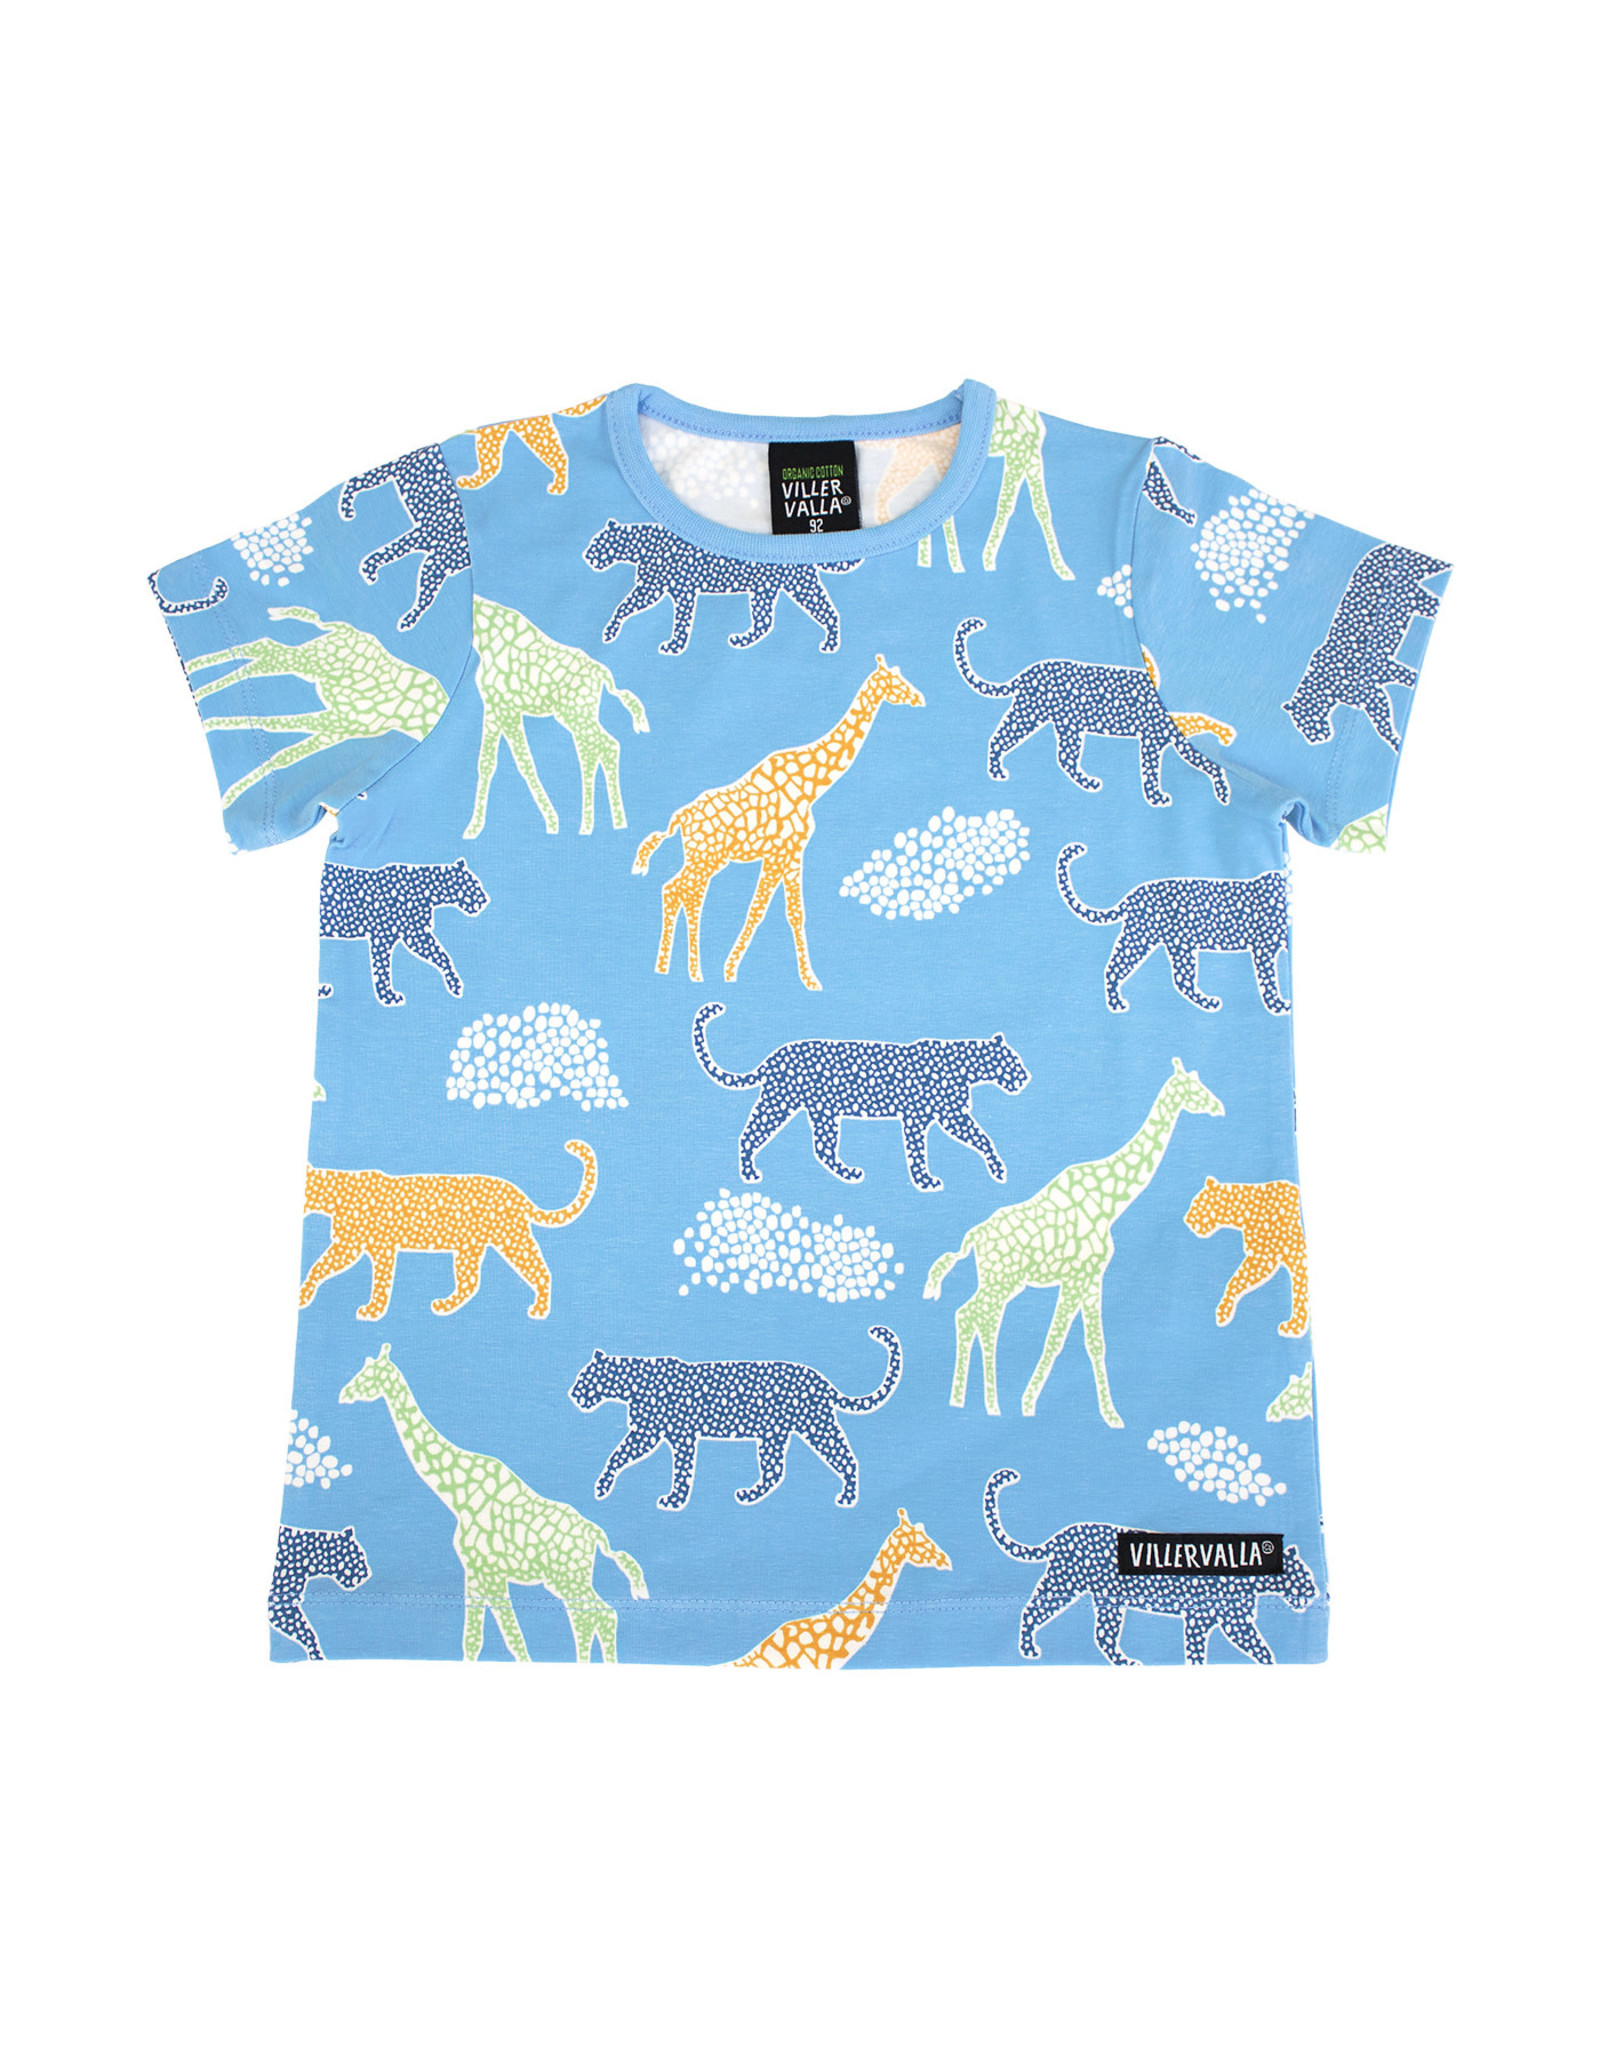 Villervalla Blauwe t-shirt met wilde dieren